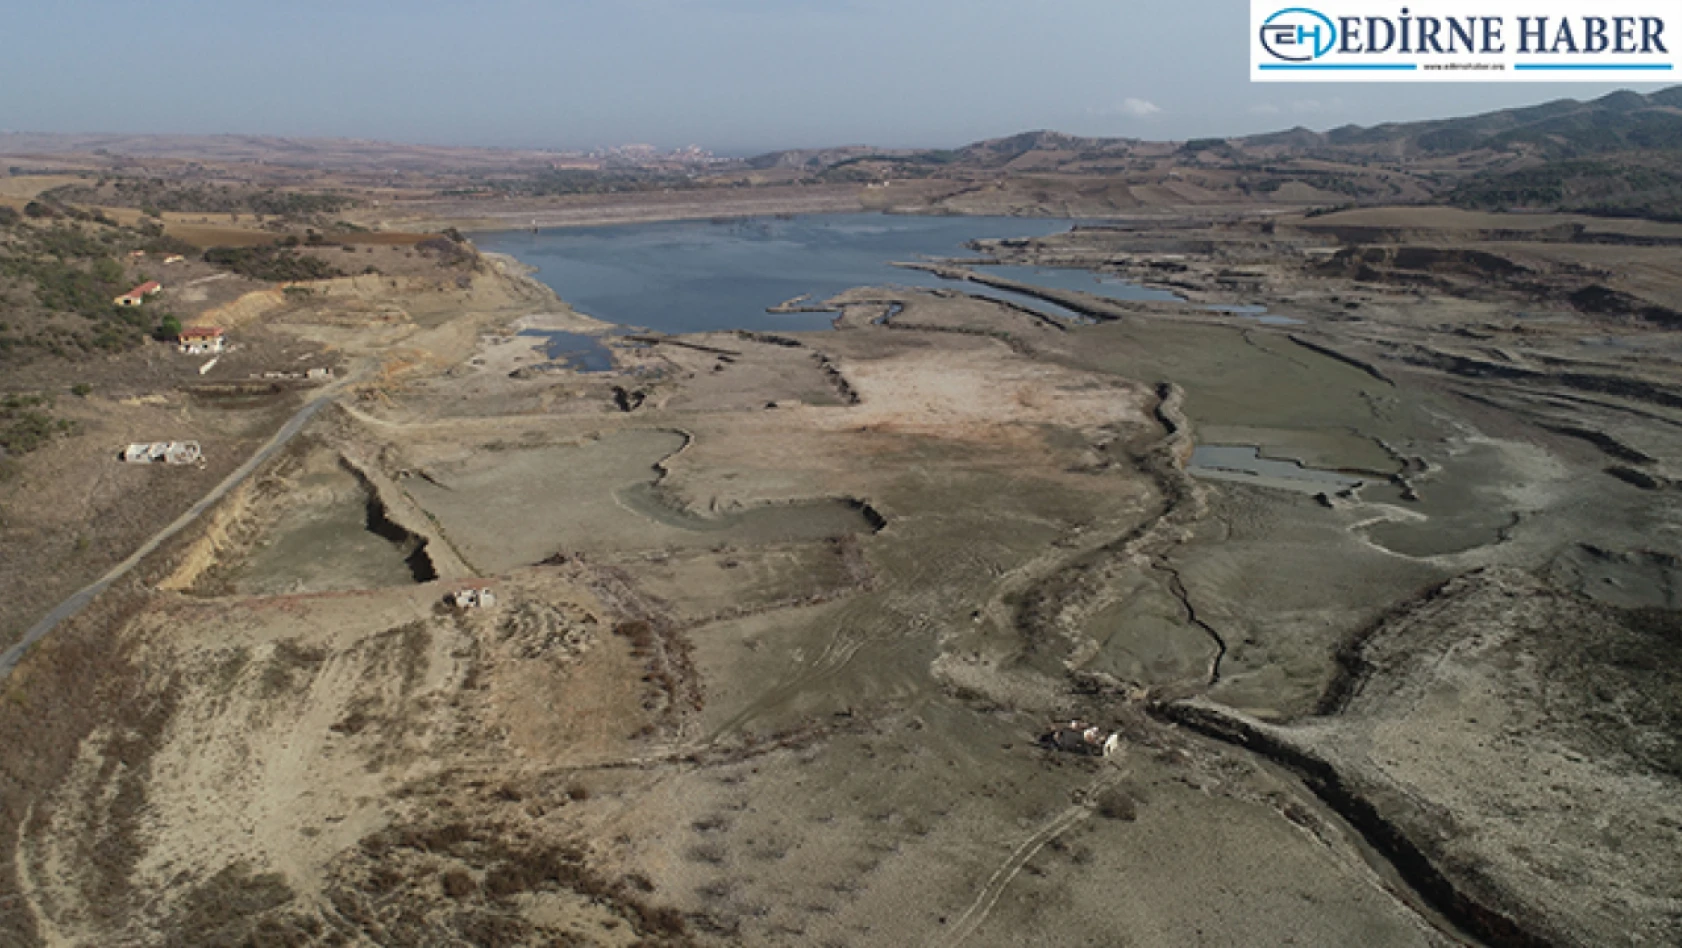 Son yağışların Trakya'daki barajların doluluğuna katkısı olmadı